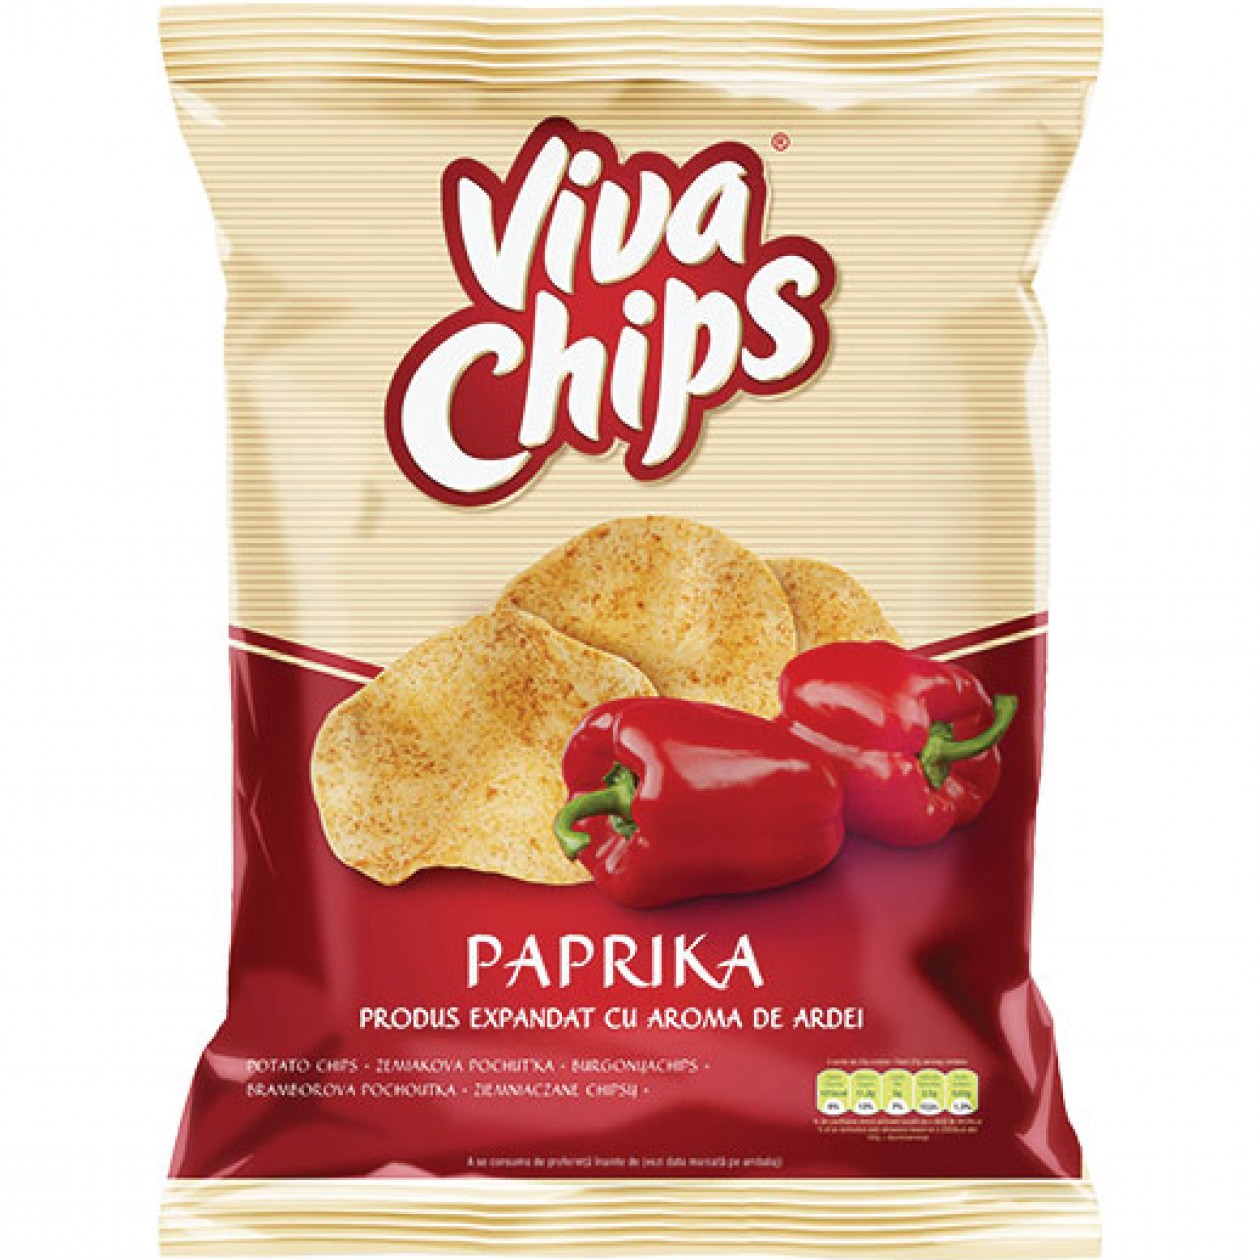 Crisps Viva Paprika 100g